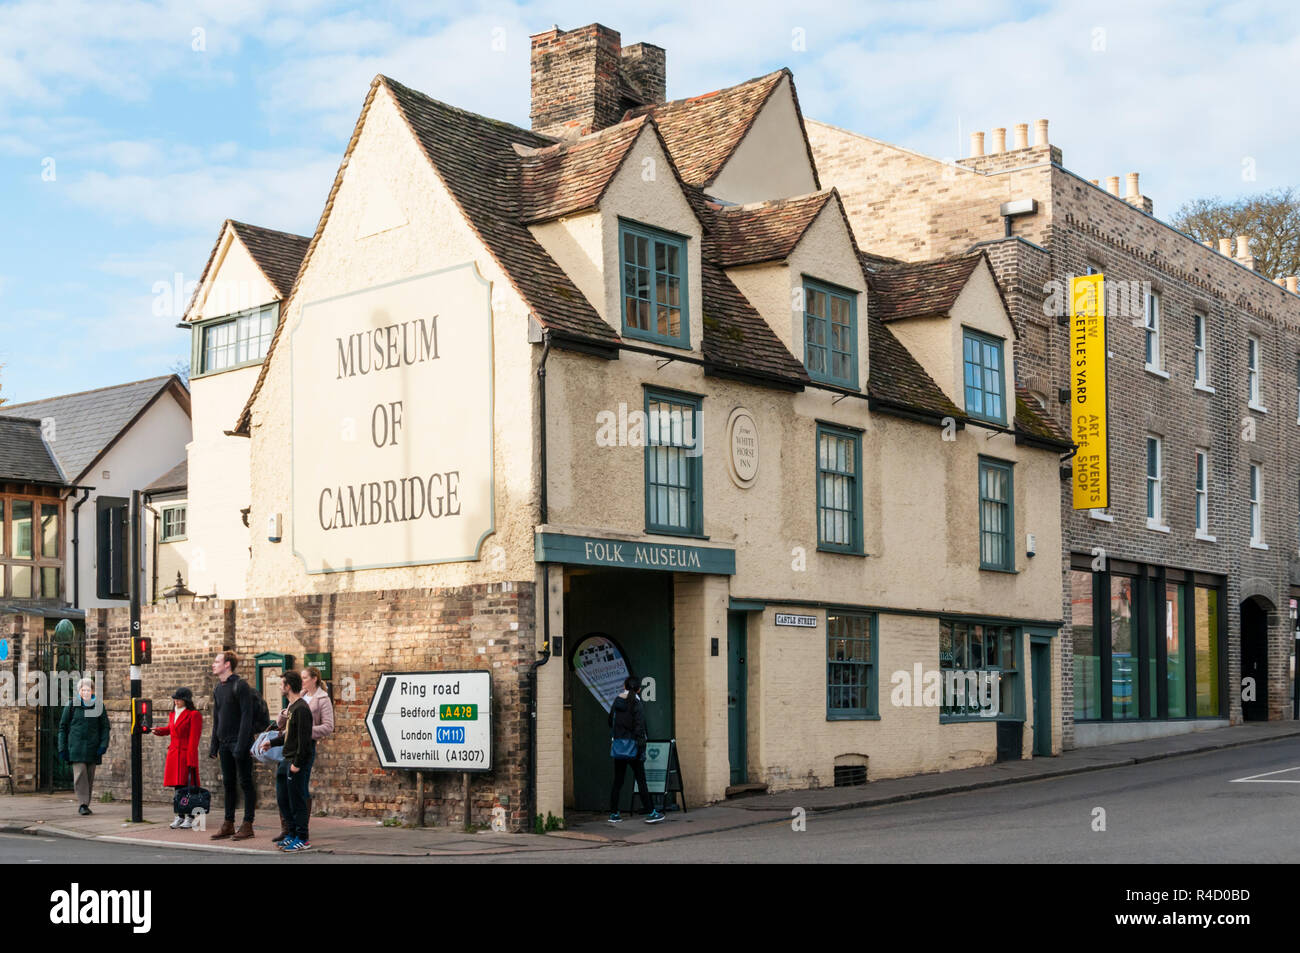 Museum of Cambridge Folk Museum in the former White Horse Inn. Stock Photo